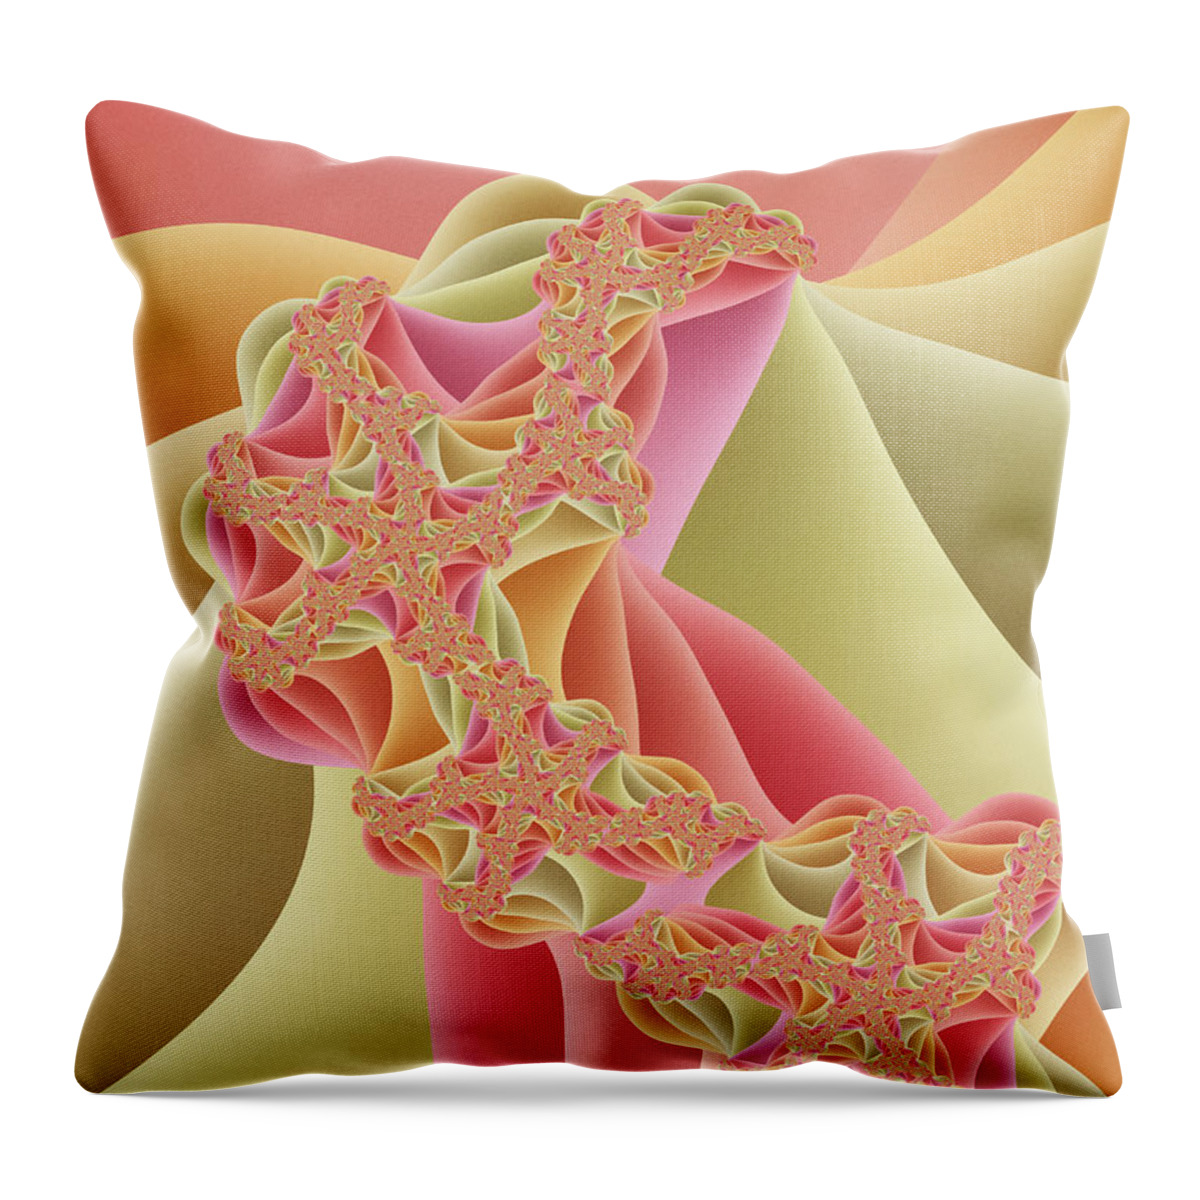 Fractal Throw Pillow featuring the digital art Romance by Gabiw Art